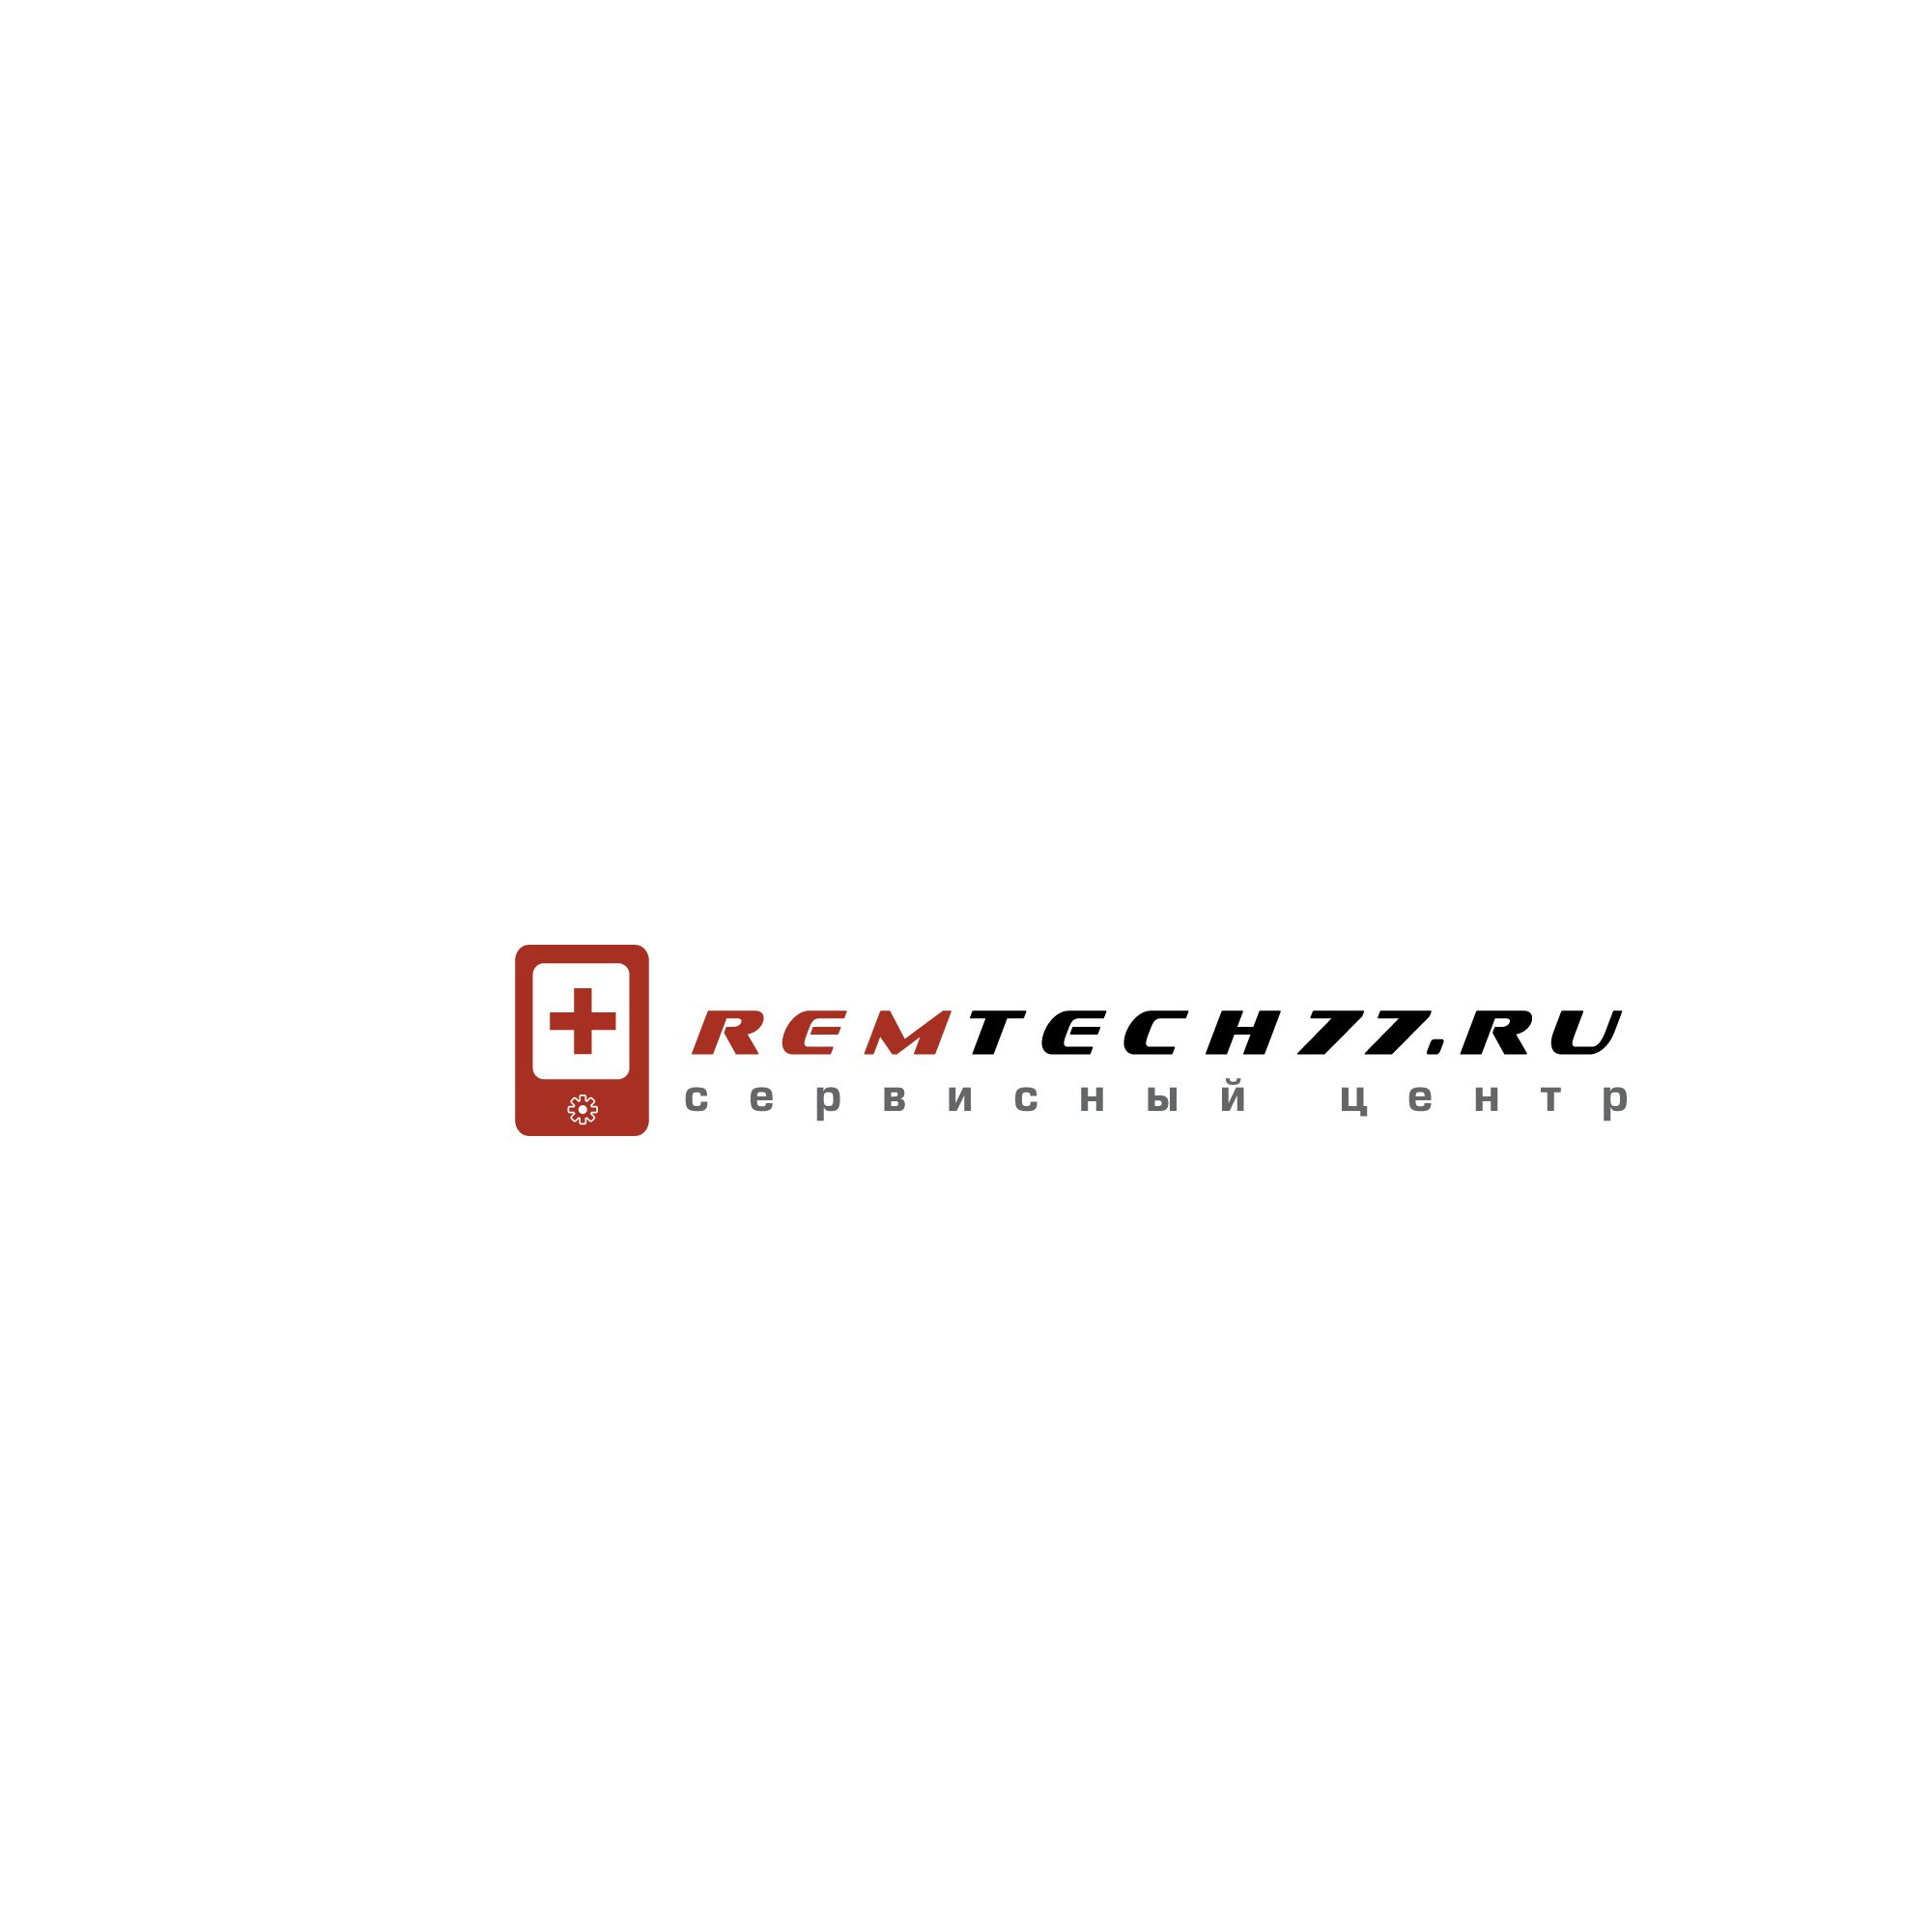 Лого и фирменный стиль для Логотип для СЦ remtech77.ru - дизайнер SmolinDenis